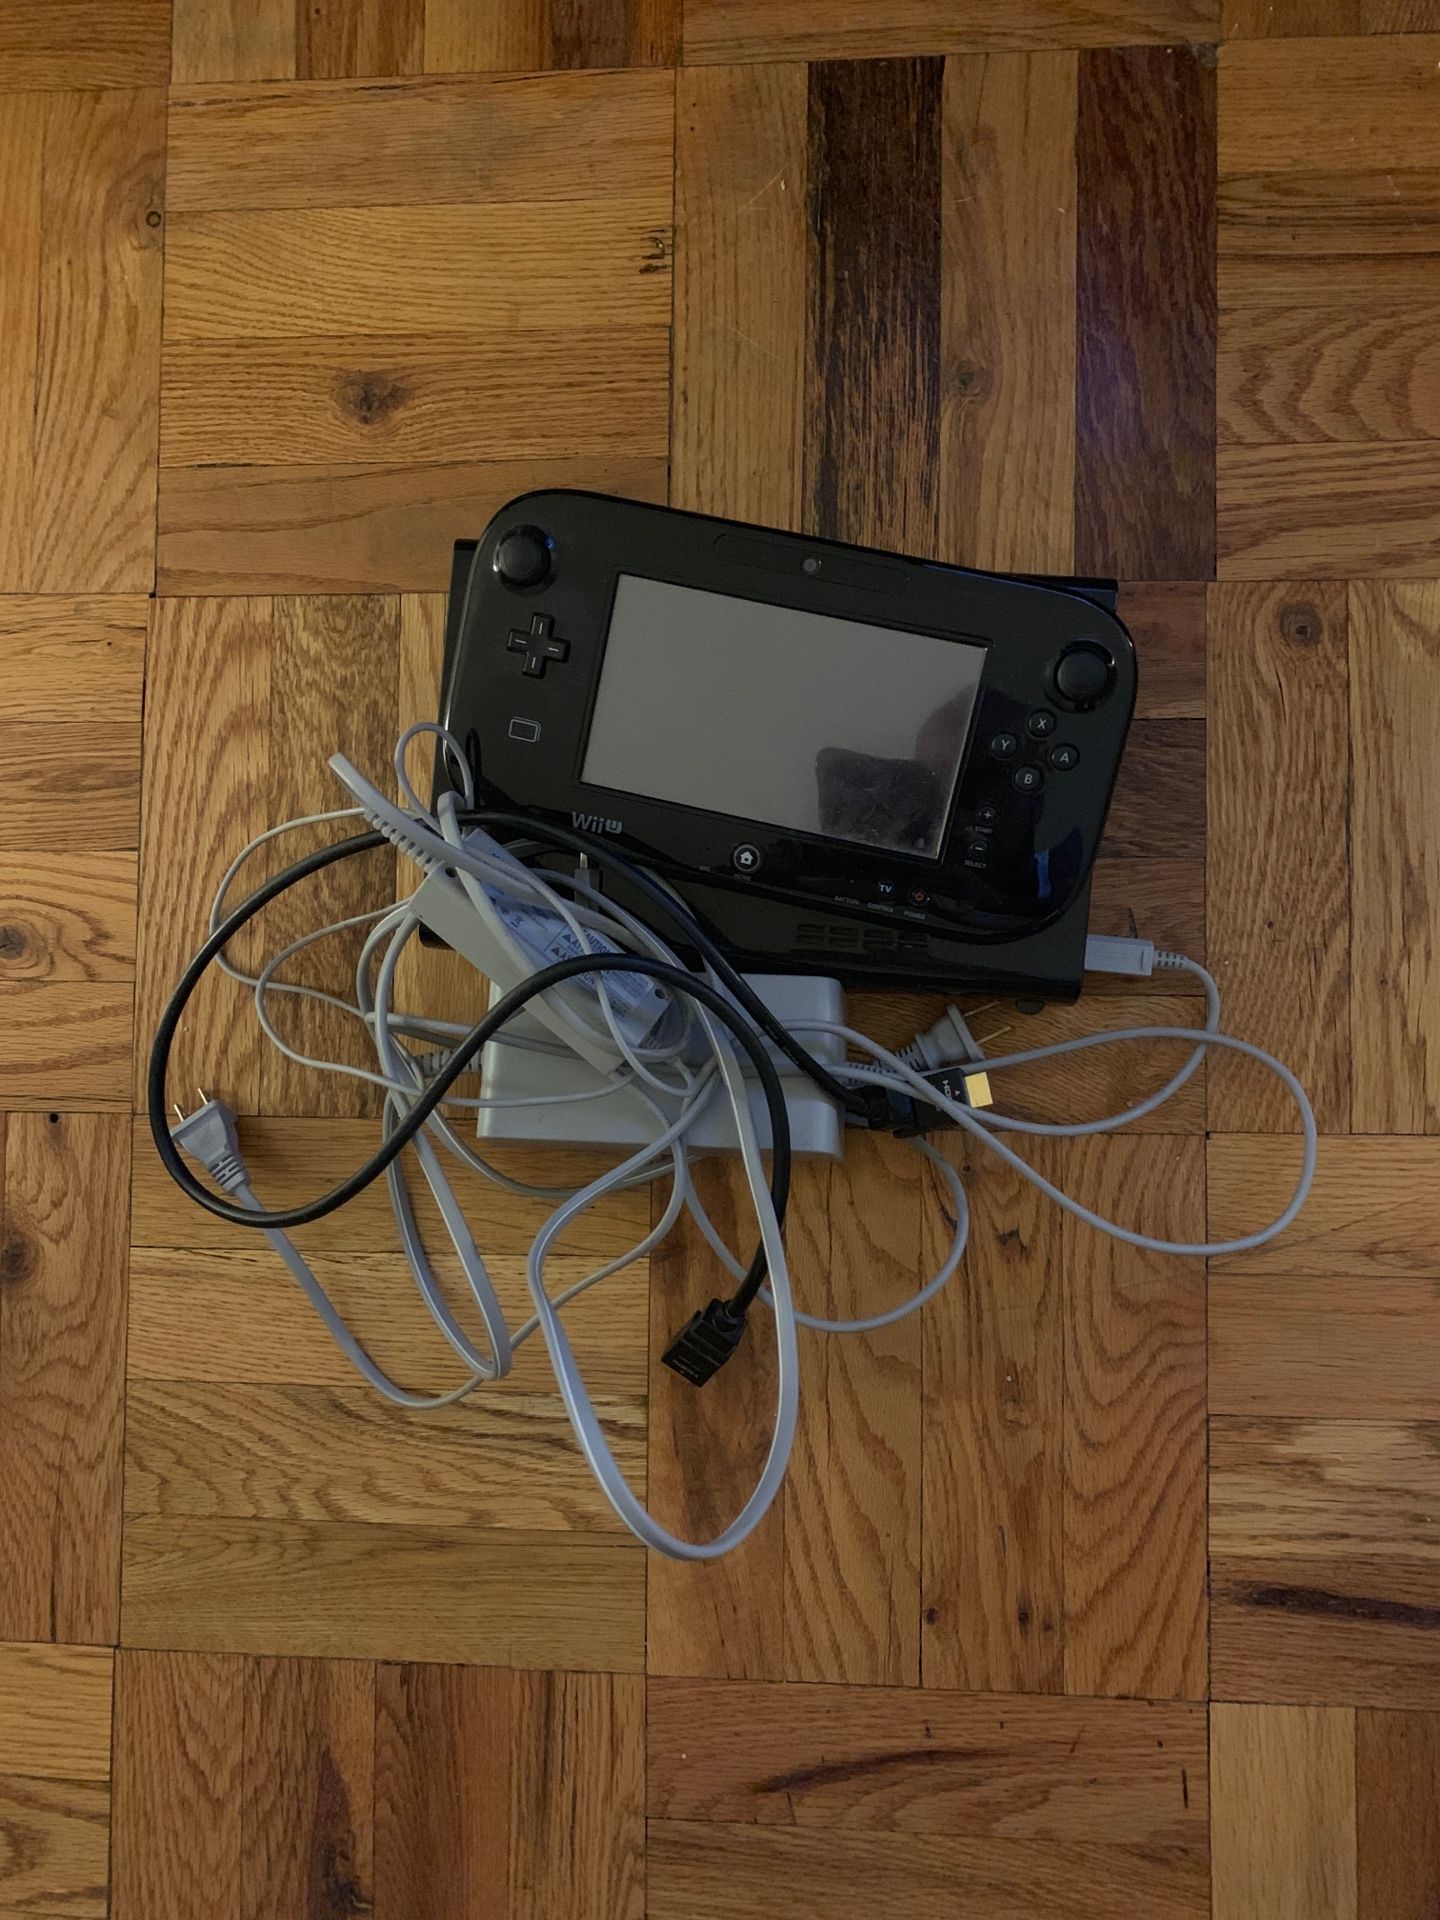 Nintendo Wii U (No Sensor Bar)